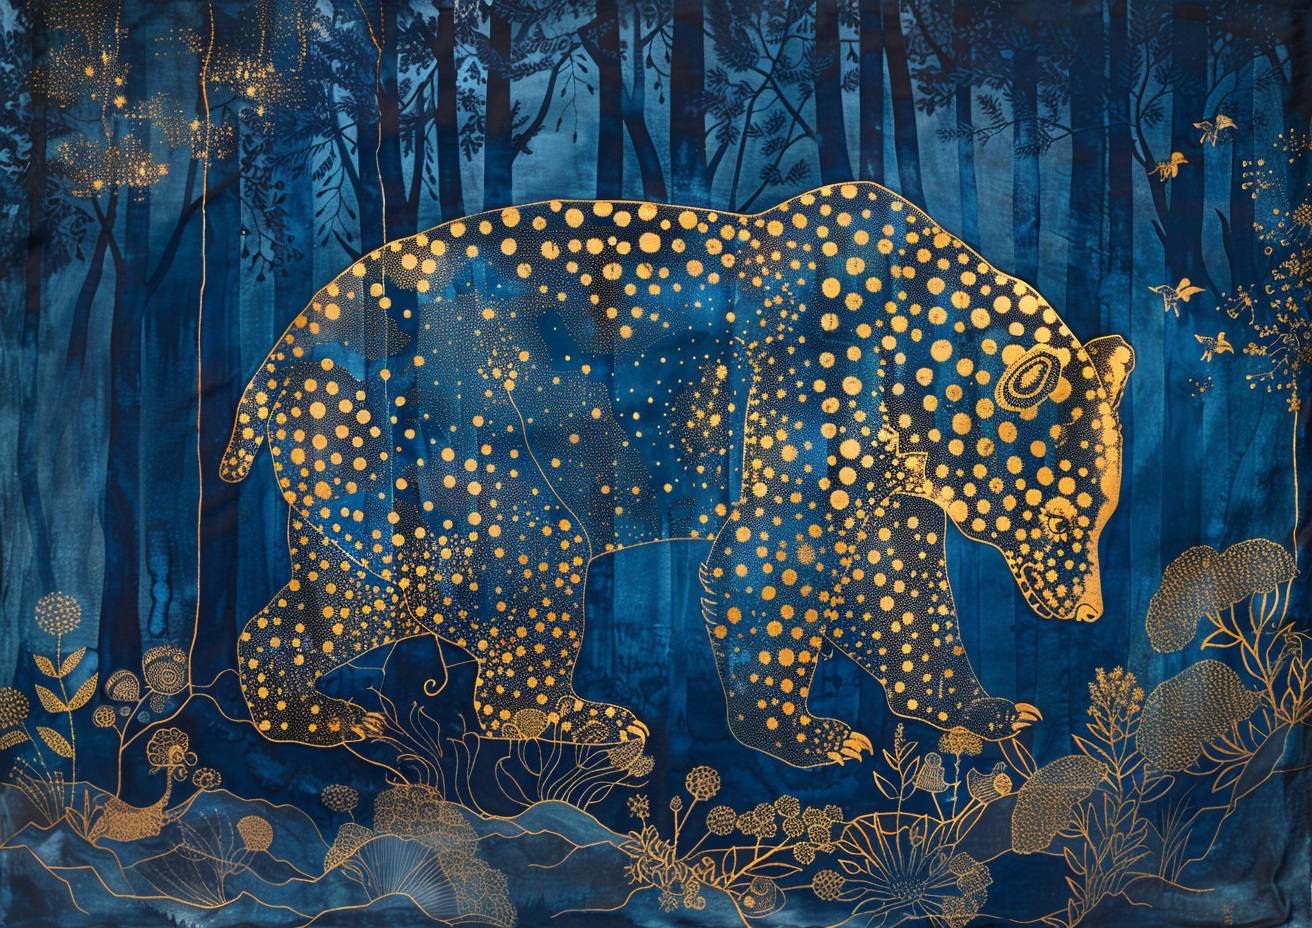 バティックシルクに墨絵の絵画、幻想的な森にある力強い熊、金と青のリンエンドットで形成されたキラキラしたゴンドアートのスタイル、入り組んだ詳細、テネブリスム、光る放射状の色彩、強いビジュアルフロー